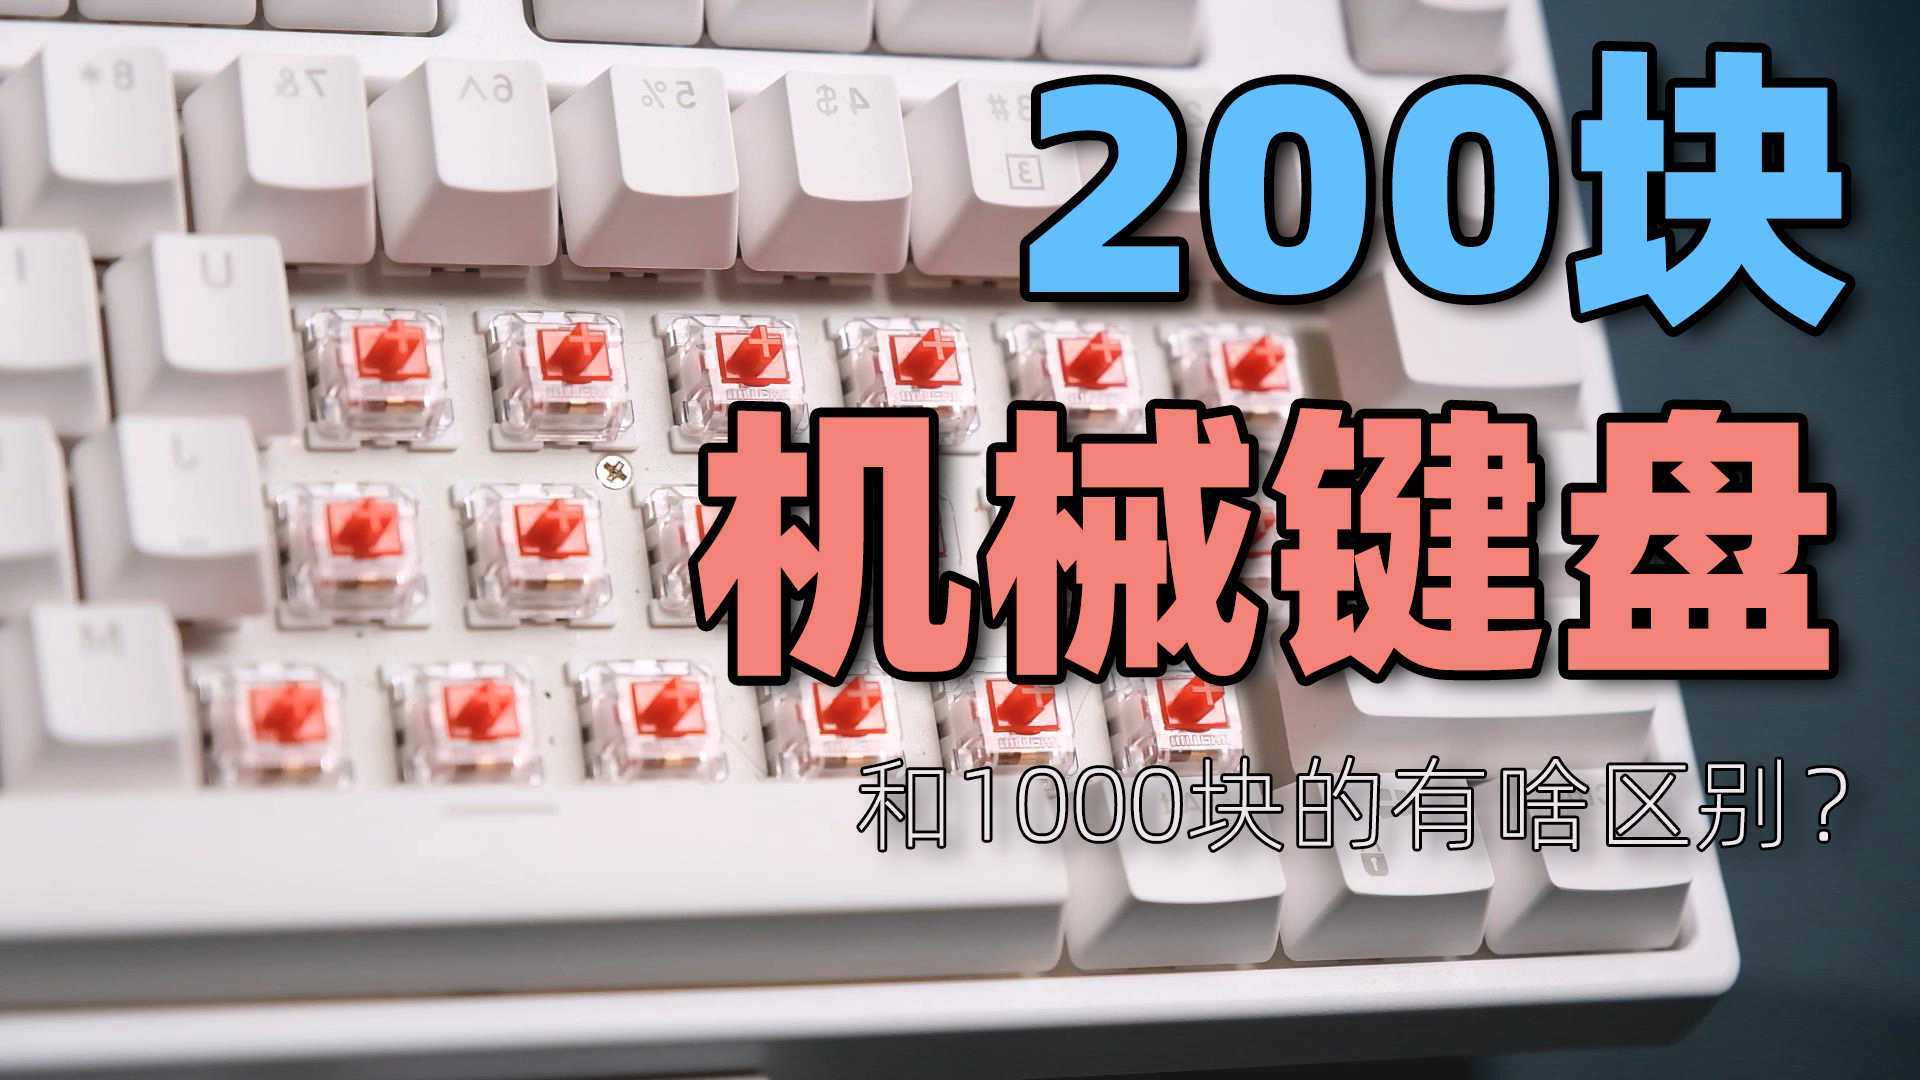 【产品开箱】200块和1000块的机械键盘，有什么区别？